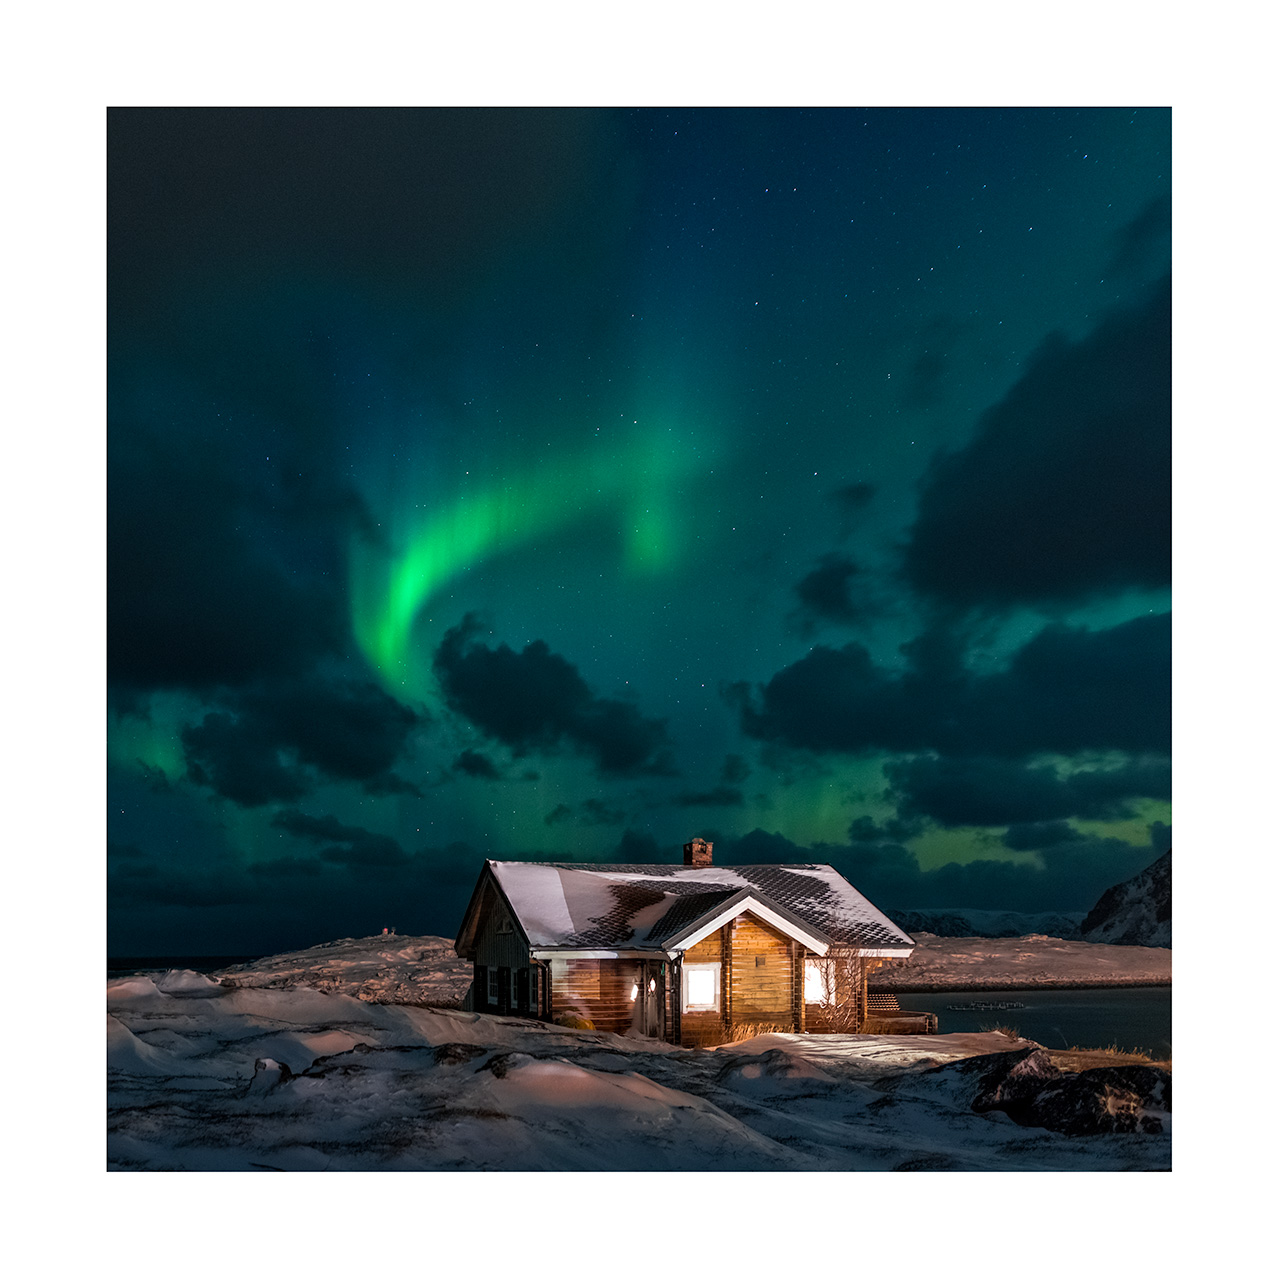 Storie di luoghi lontani  Gambacciani-fotografia-viaggi-aurora-Lapponia-Norvegia La magia dell'Aurora